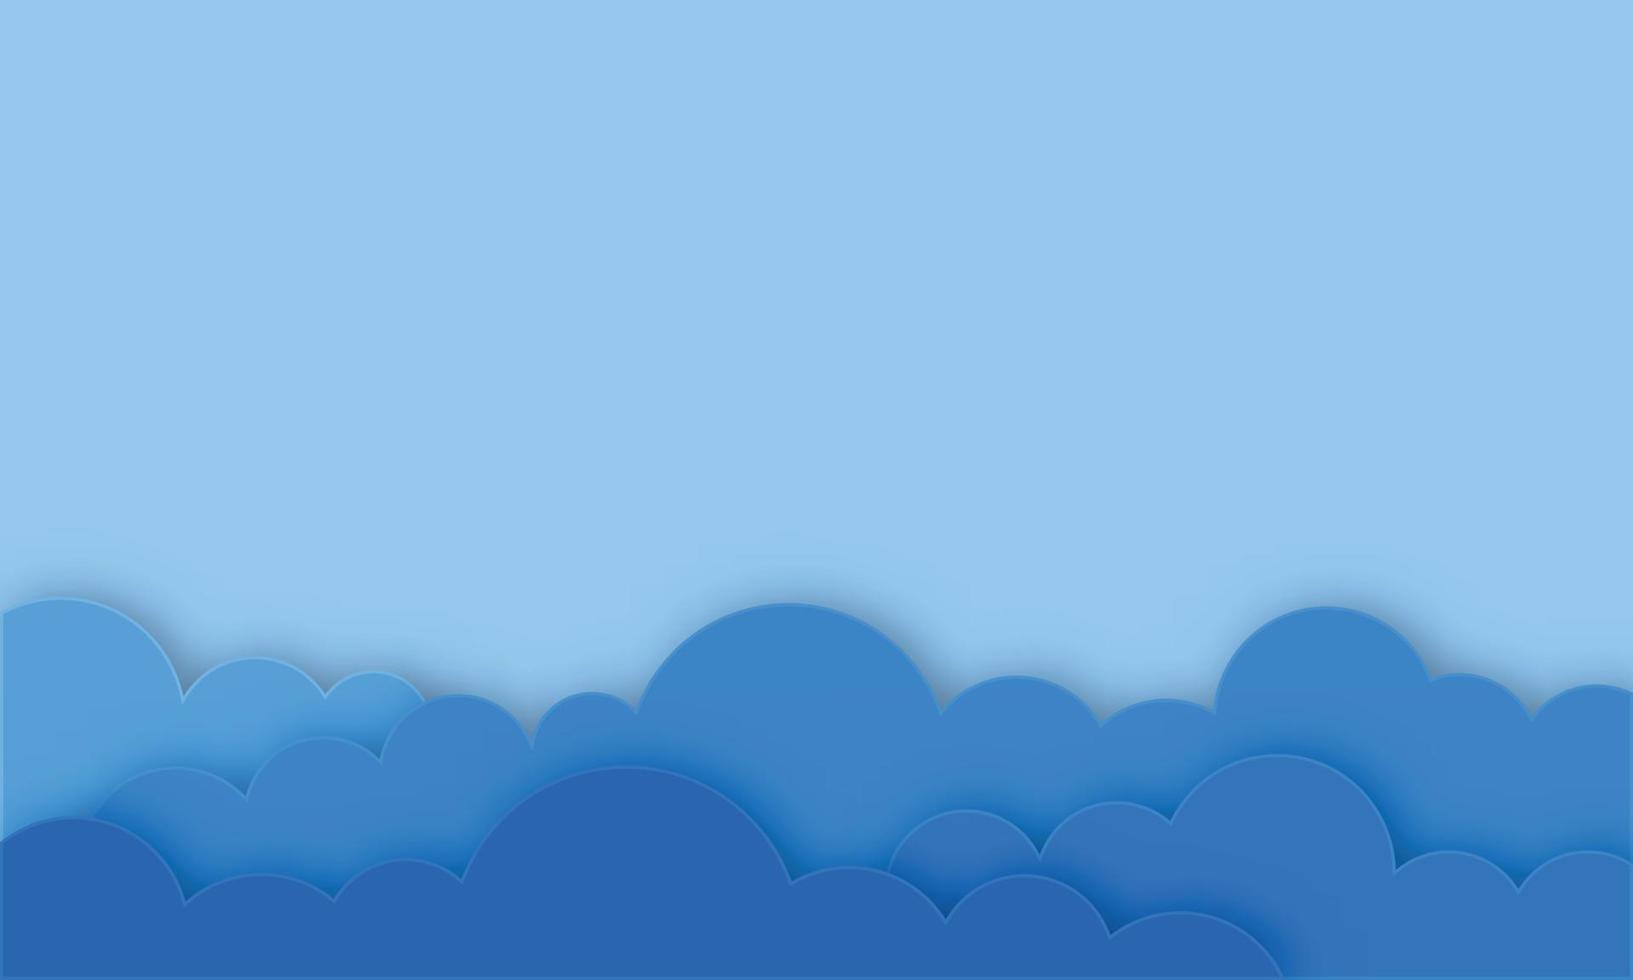 wolken op blauwe hemel. banner met copyspace. papier gesneden stijl. vector